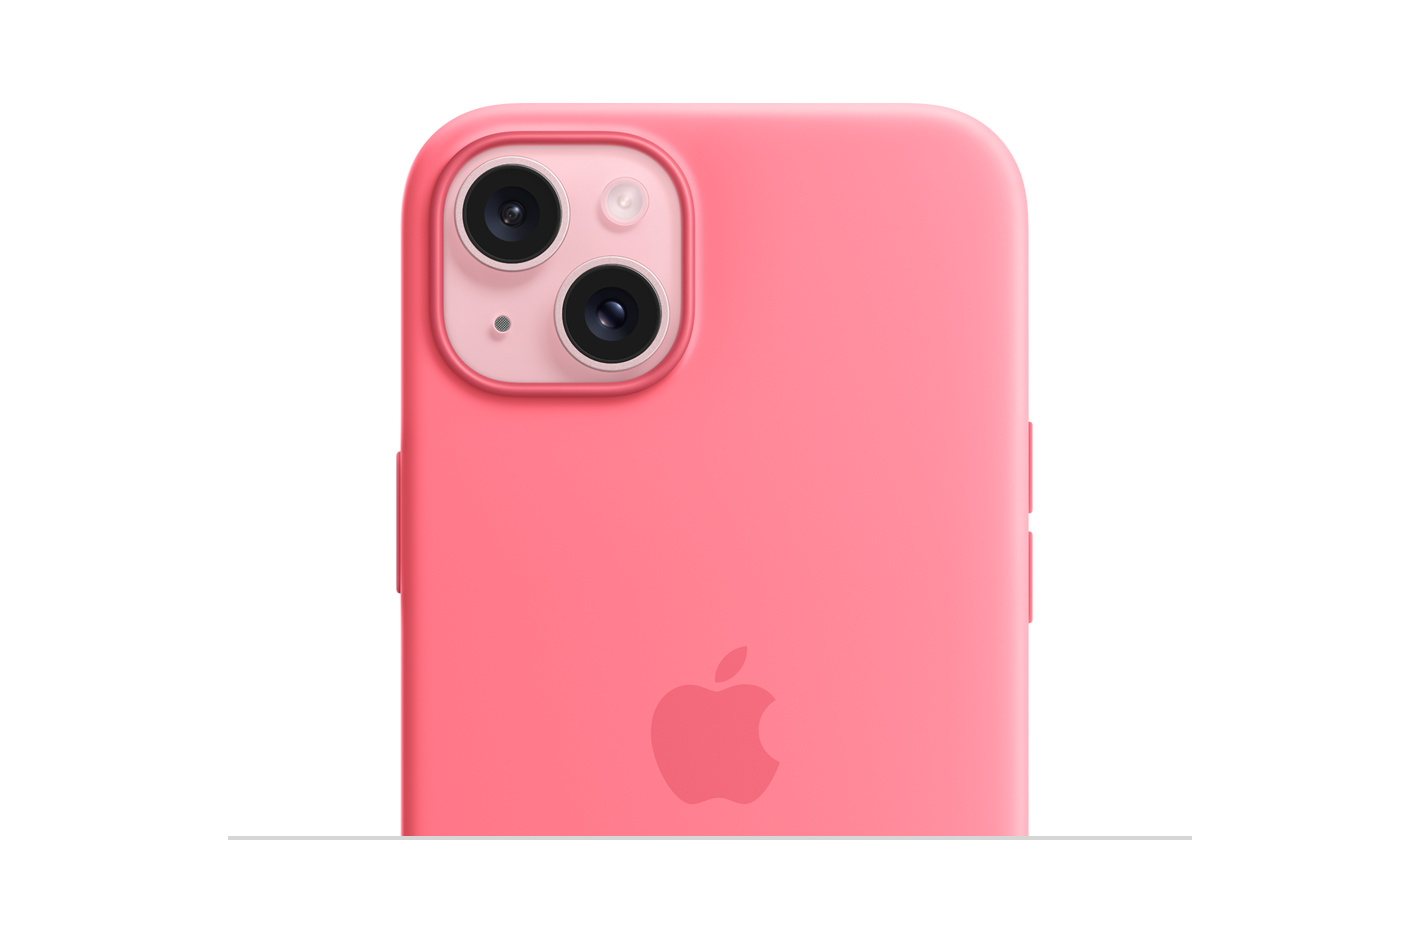 粉紅色 MagSafe 矽膠護殼，內嵌的 Apple 標誌在中央；貼合在粉紅色 iPhone 15，裝置外觀透過相機開口位顯露出來。